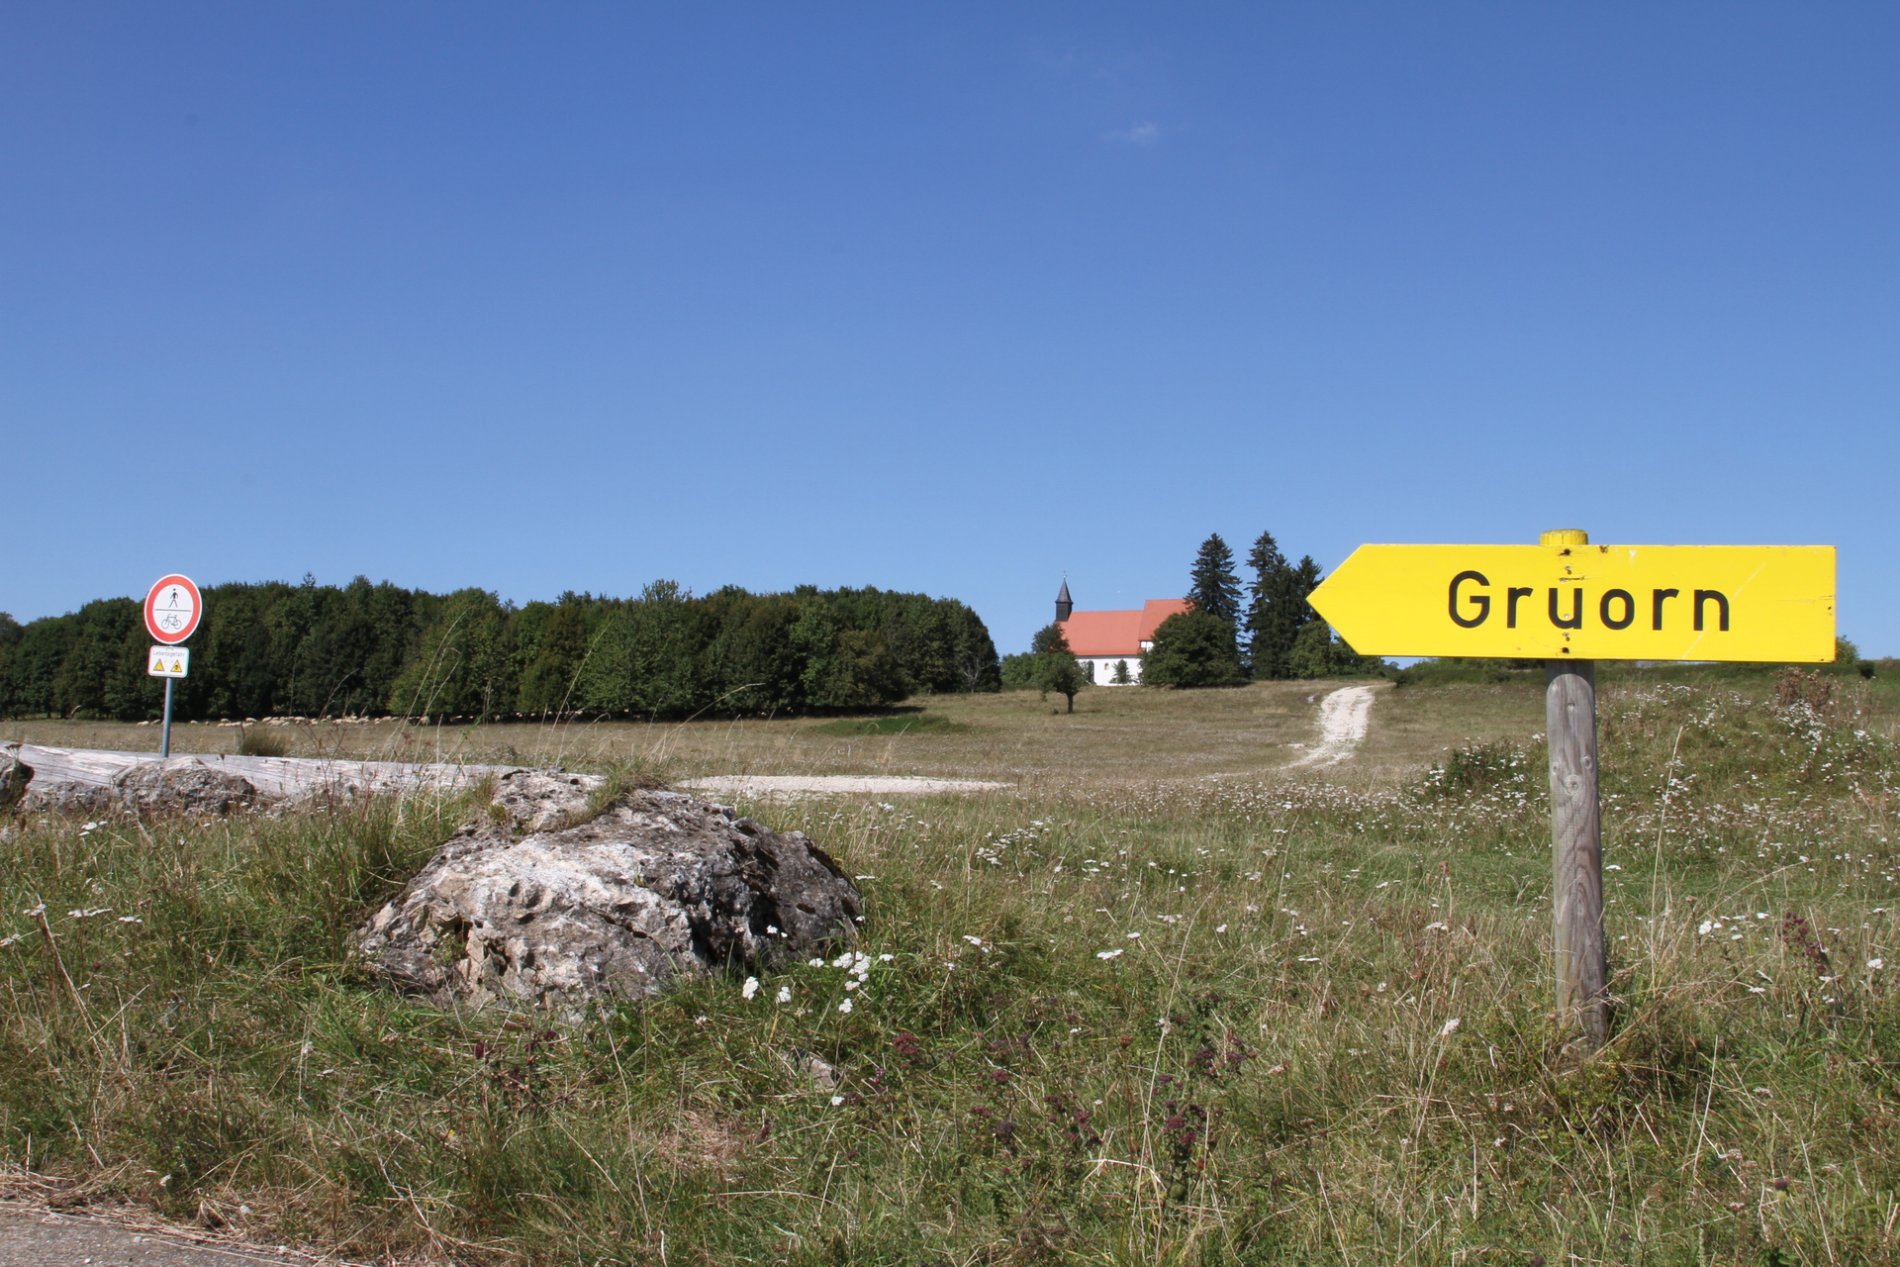 Im Vordergrund ist ein gelbes Holzschild mit der Aufschrift Gruorn. Daneben ist ein Fels. Im Hintergrund ist ein kleiner Hügel und eine Kirche zu der ein kleiner Schotterweg führt. Der Himmel ist blau.